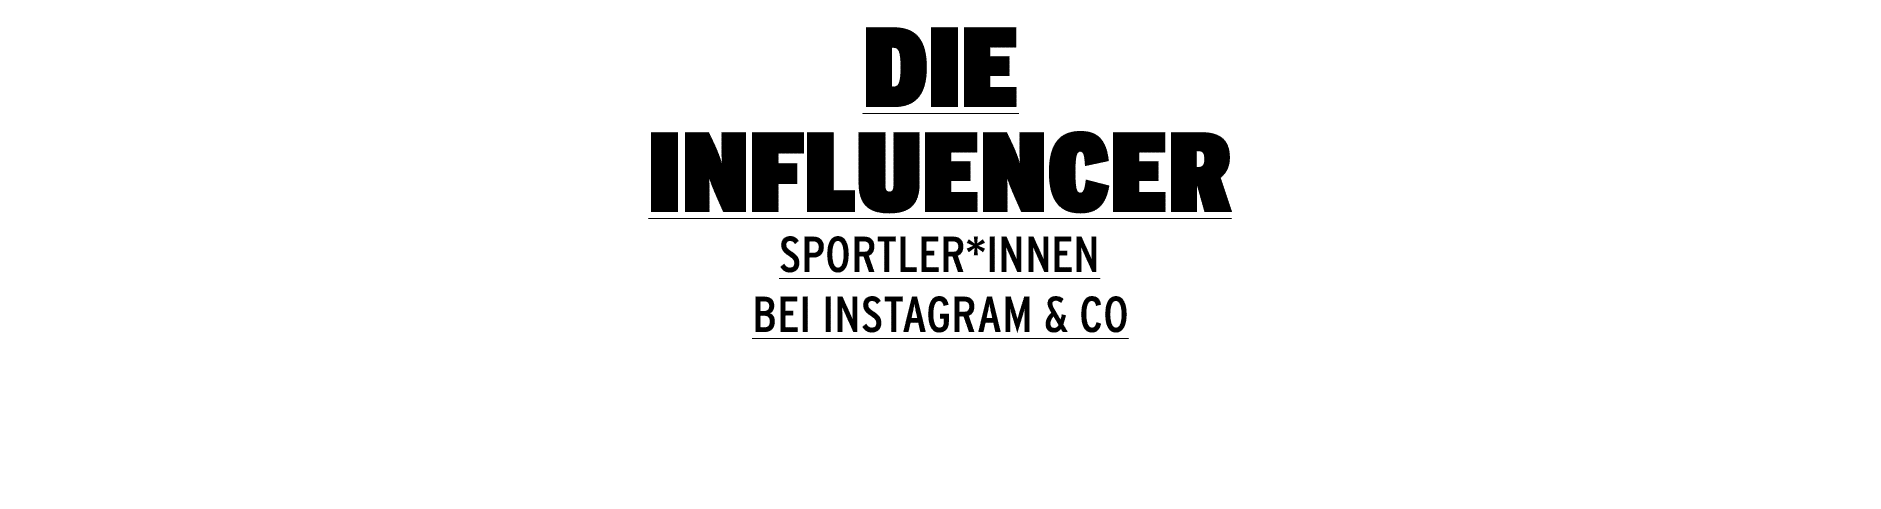 Die Influencer Sportler*innen bei Instagram & Co 